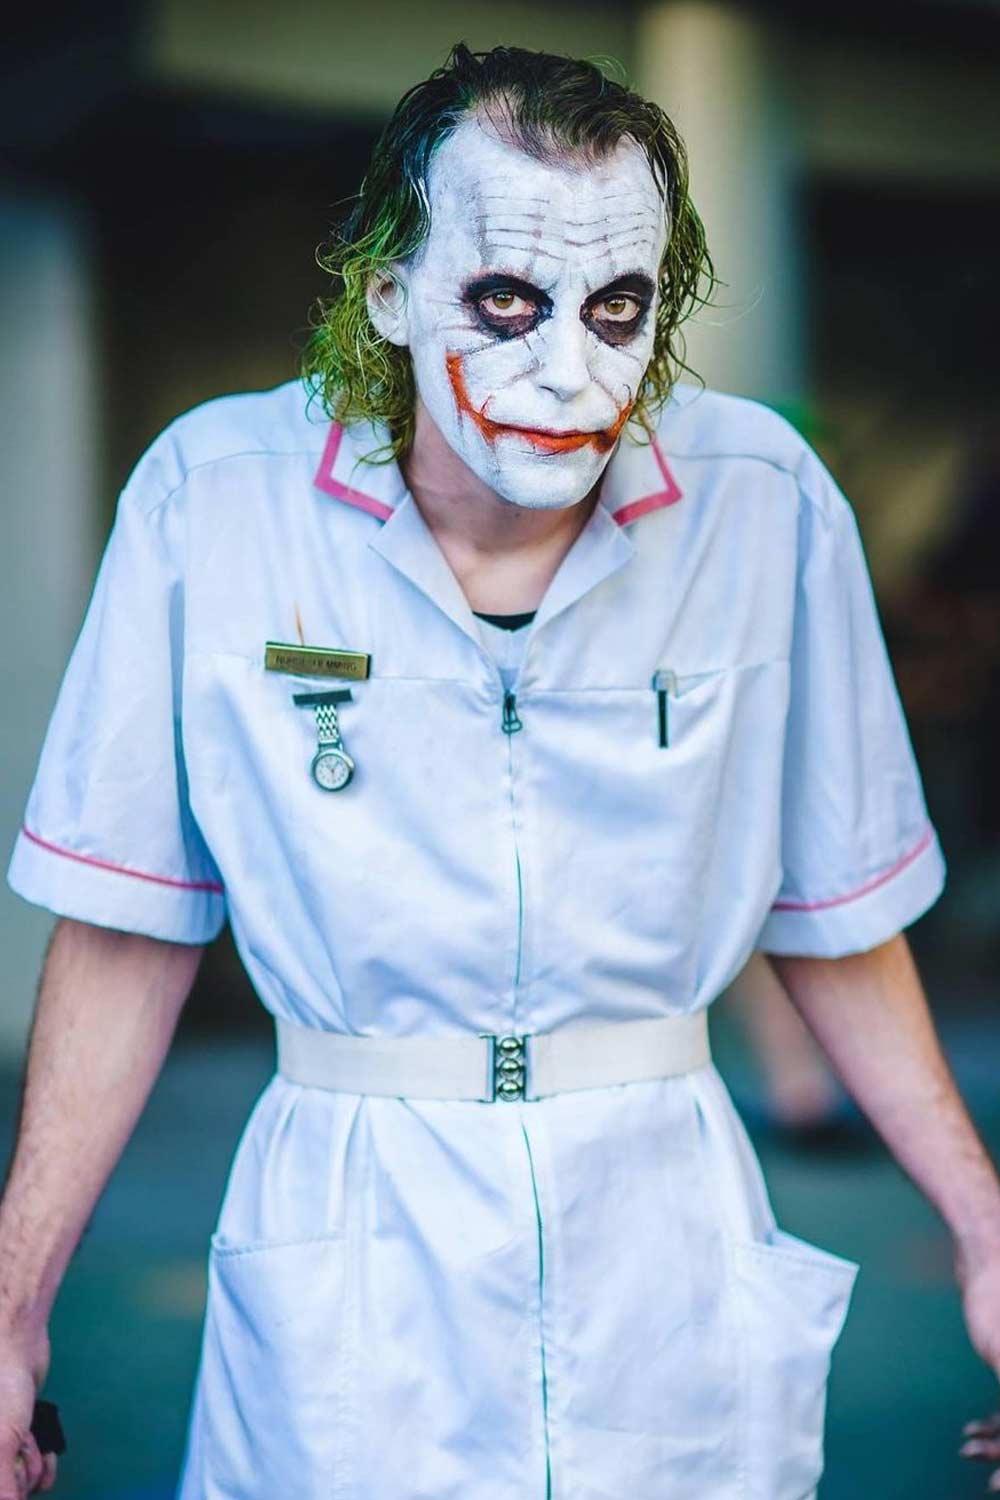 Joker Costume Design for Halloween